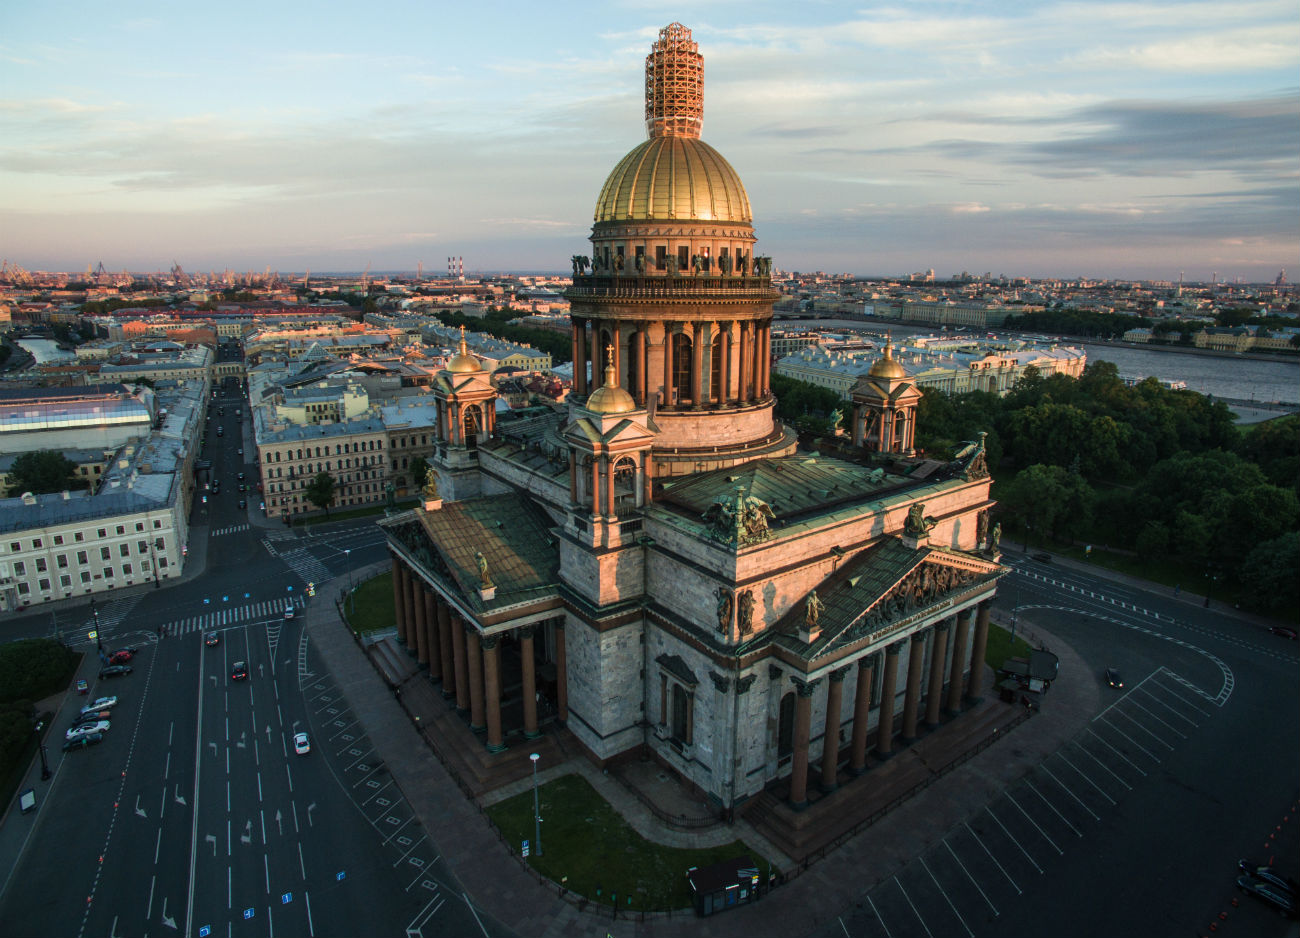 　サンクトペテルブルクの聖イサアク大聖堂は、比類なき歴史的建造物。建築（厳密にいえば、それ以前に建設された教会の改築）は、皇帝アレクサンドル1世によって進められた。公開建築競技が行われ、フランスの建築家オーギュスト・モンフェランが優勝した。建築には40年を要し、竣工式は1858年6月に行われた。大聖堂はその大きさで、多くの詩人や作家によって、賛美された。フョードル・チュッチェフはこう書いている。「ネヴァ川上方に立ちながら見た／巨大イサアクよ／凍てつく濃霧の中で／黄金の丸屋根が光った」